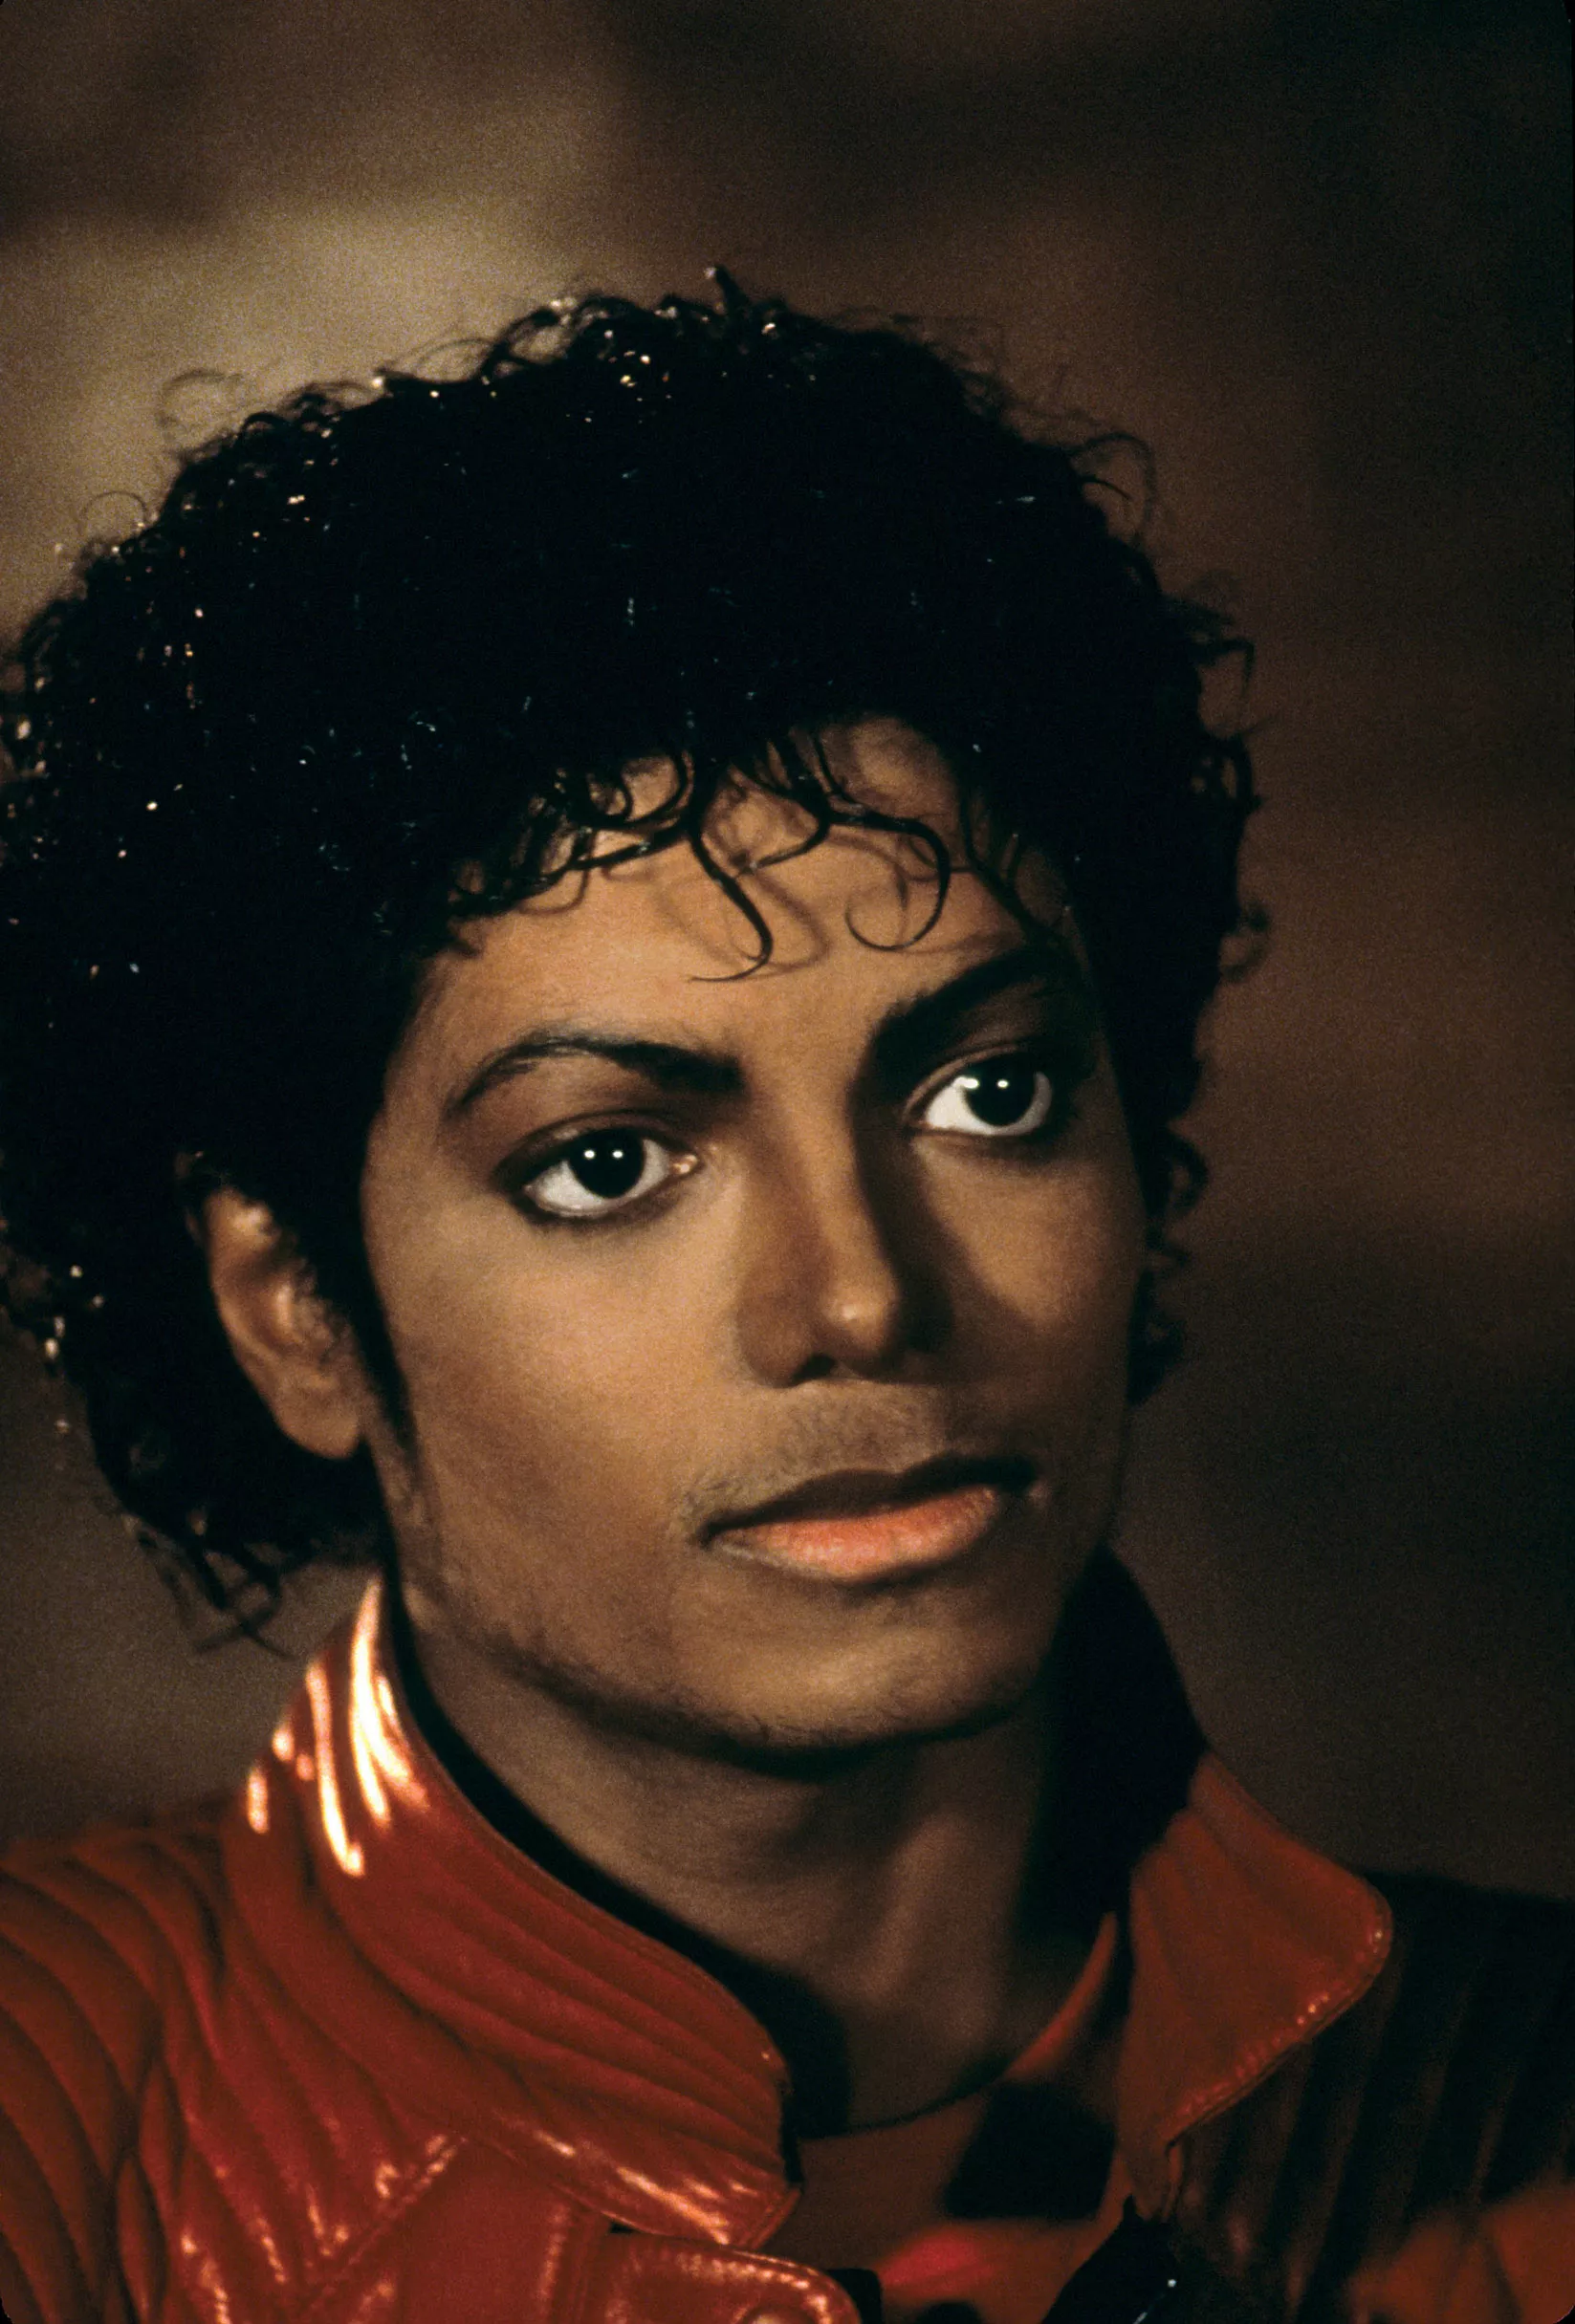 Anmeldere: Ny dokumentar om Michael Jacksons overgreb virker overbevisende